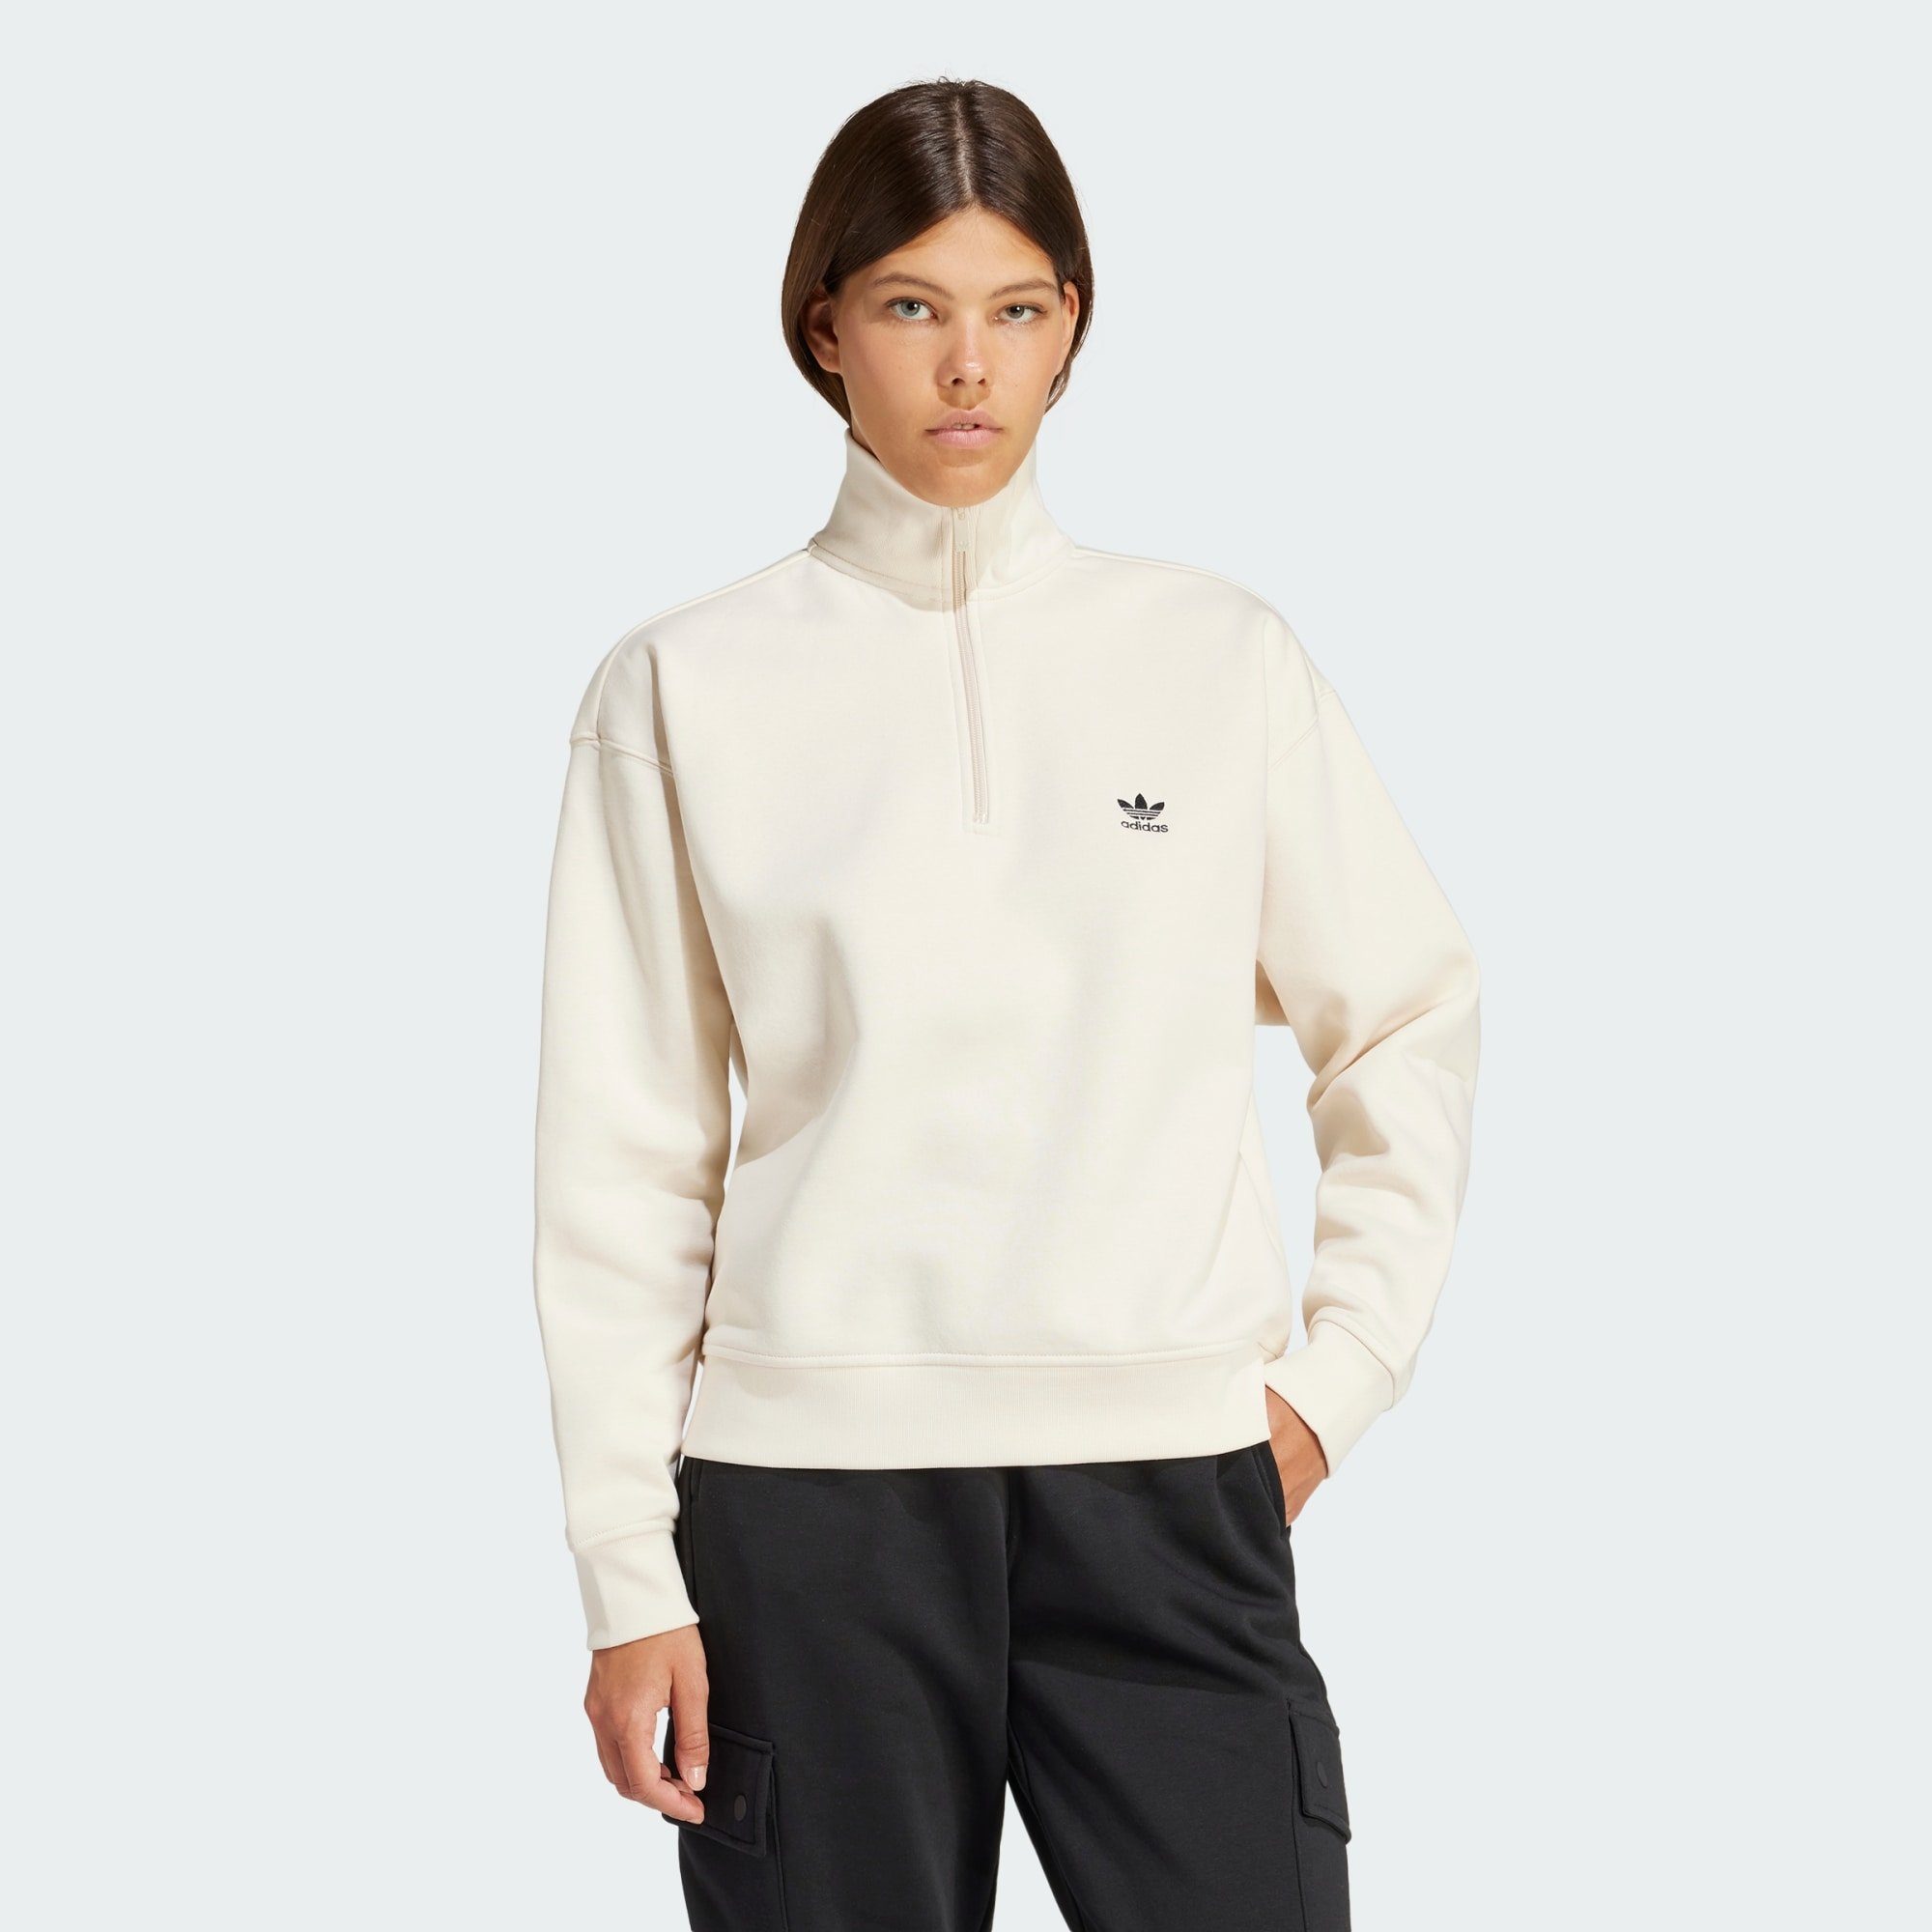 ESSENTIALS ZIP adidas 1/2 Sweatshirt SWEATSHIRT Originals